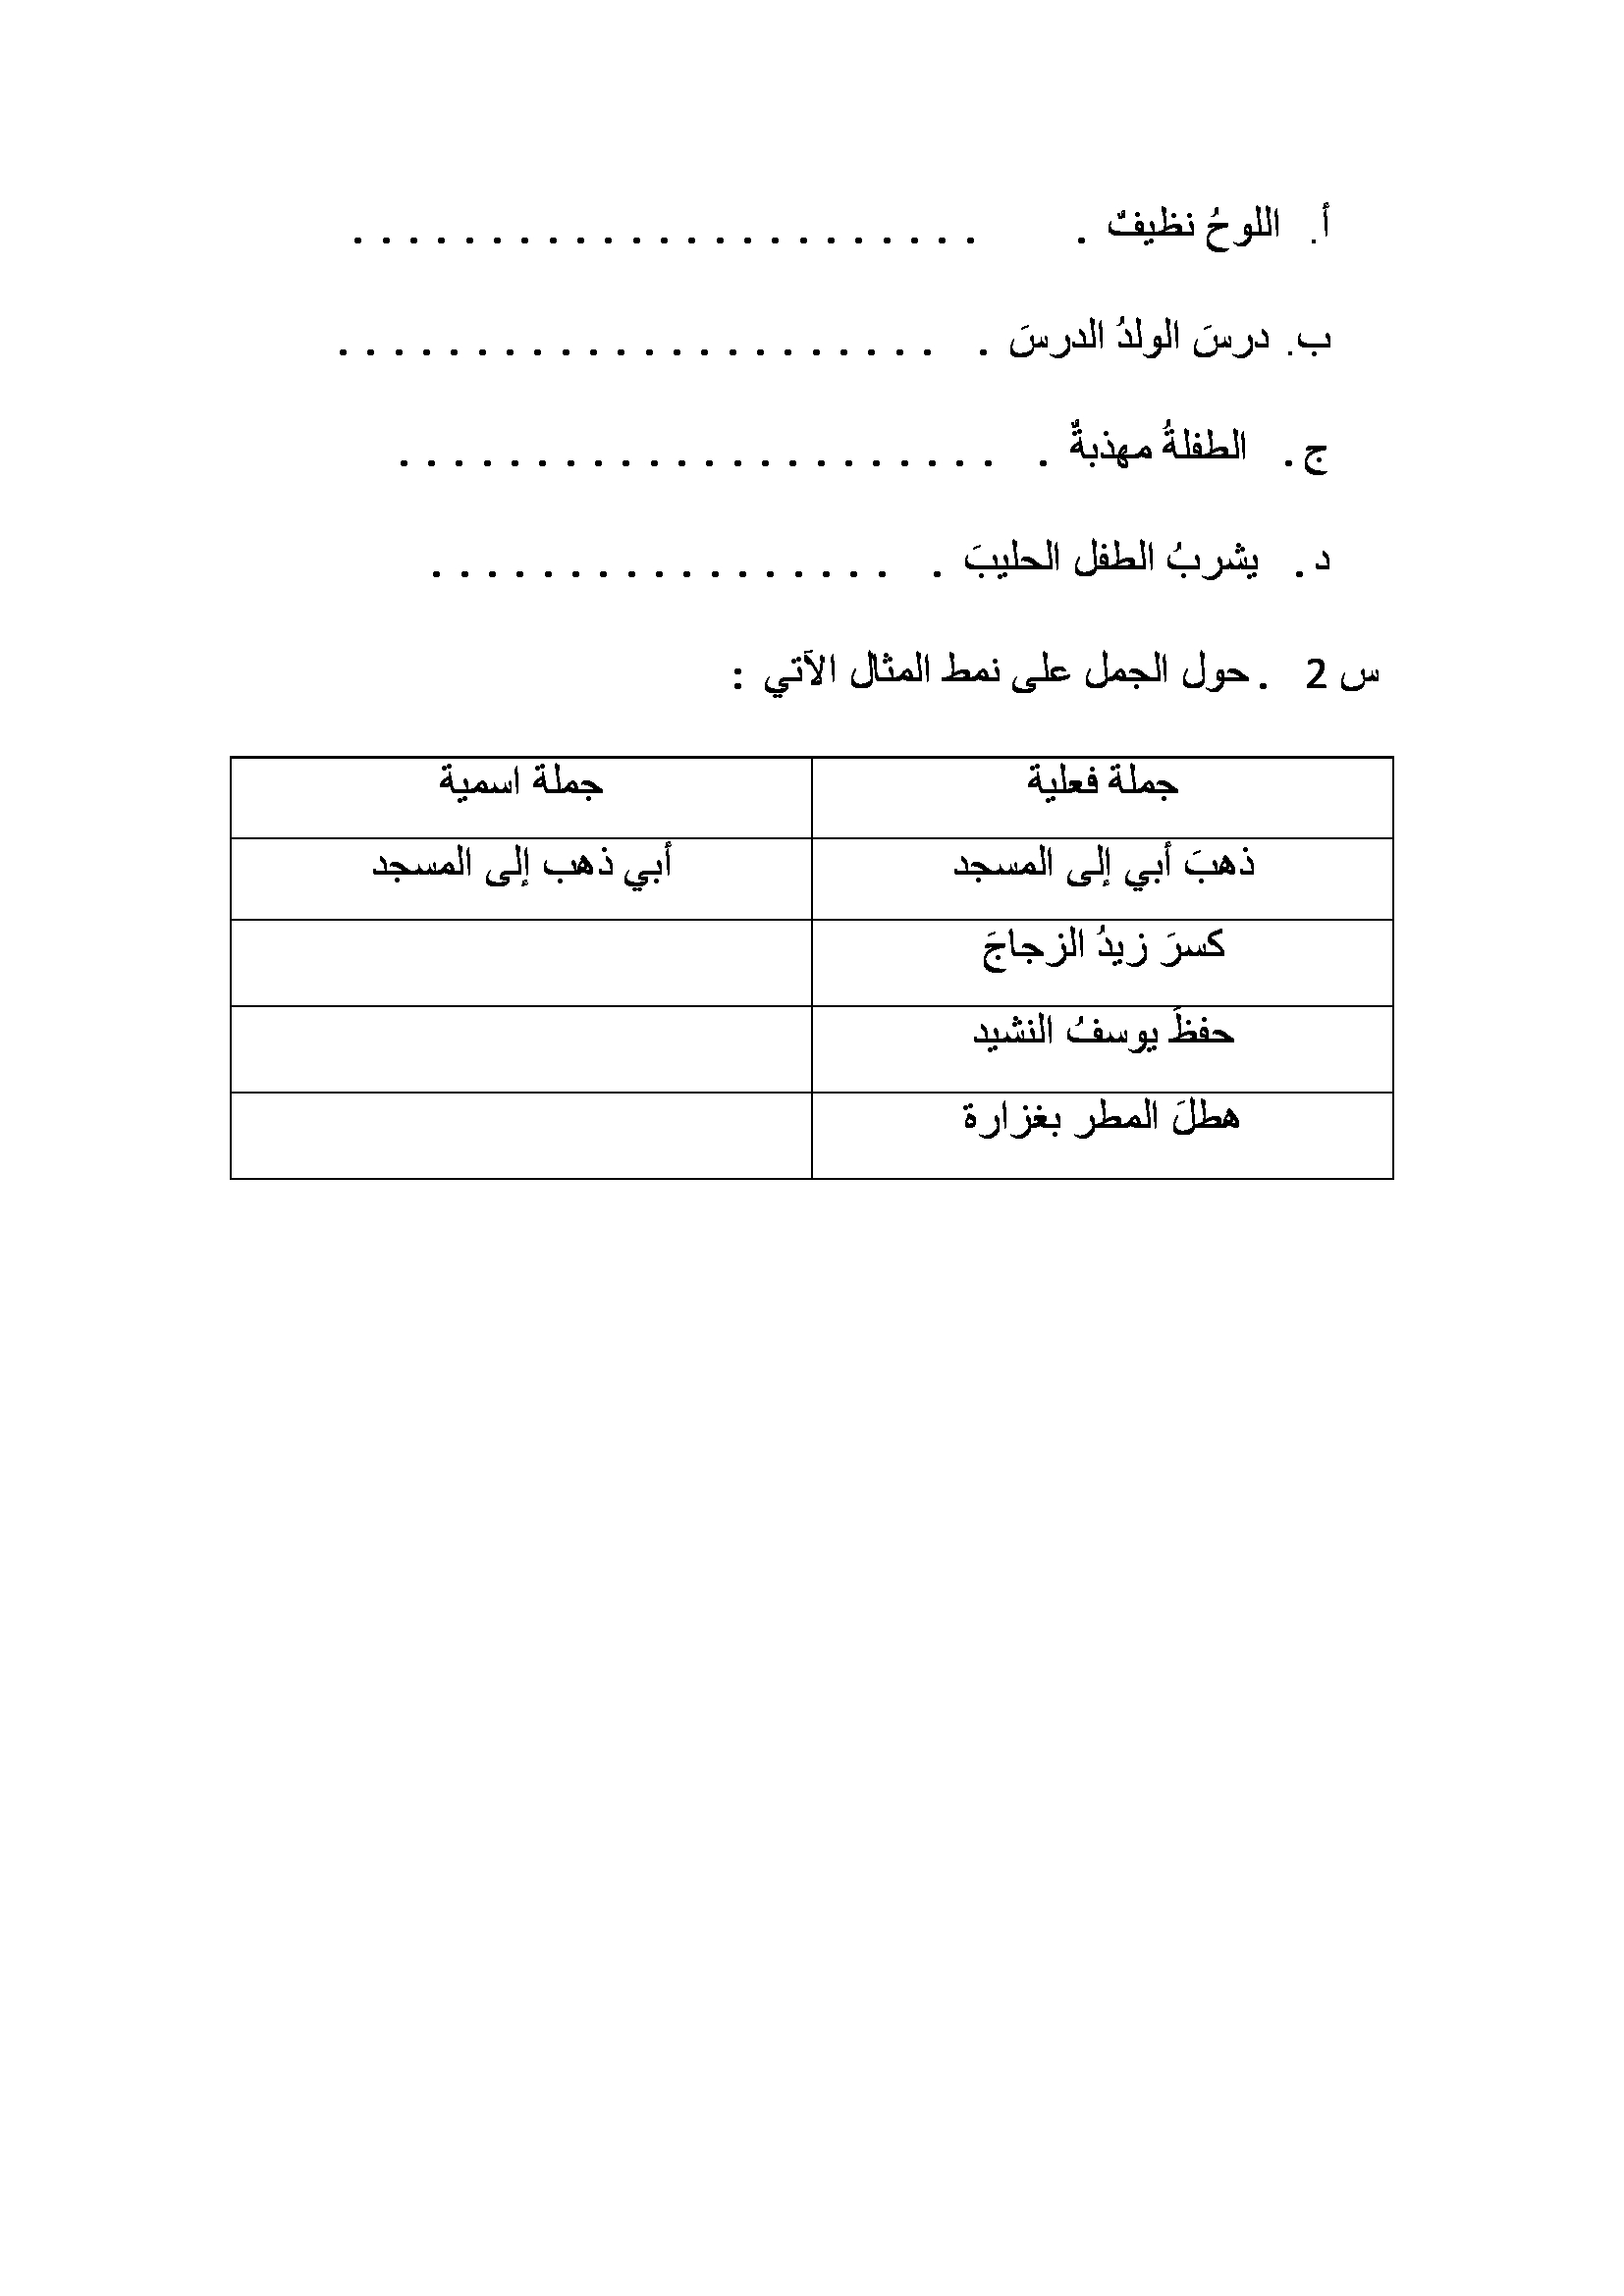 ورقة عمل "الجملة الفعلية والجملة الاسمية" لمادة اللغة العربية للصف